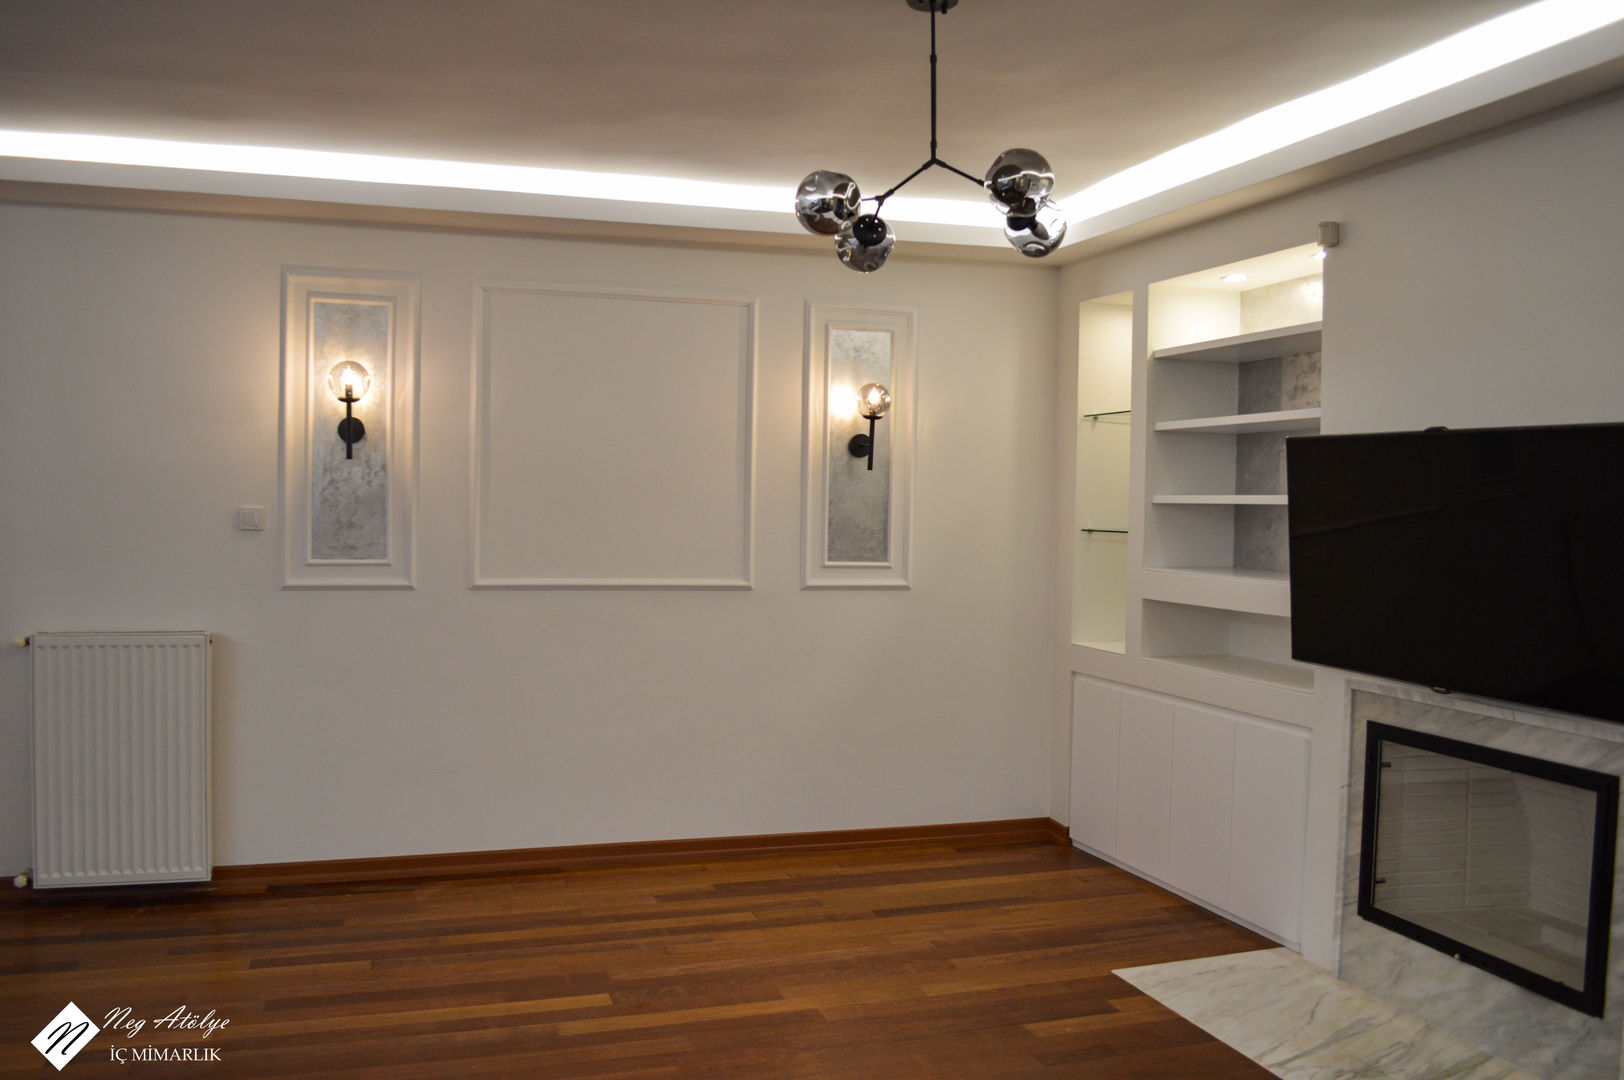 Ortaköy Konut Projesi, NEG ATÖLYE İÇ MİMARLIK NEG ATÖLYE İÇ MİMARLIK Minimalist living room